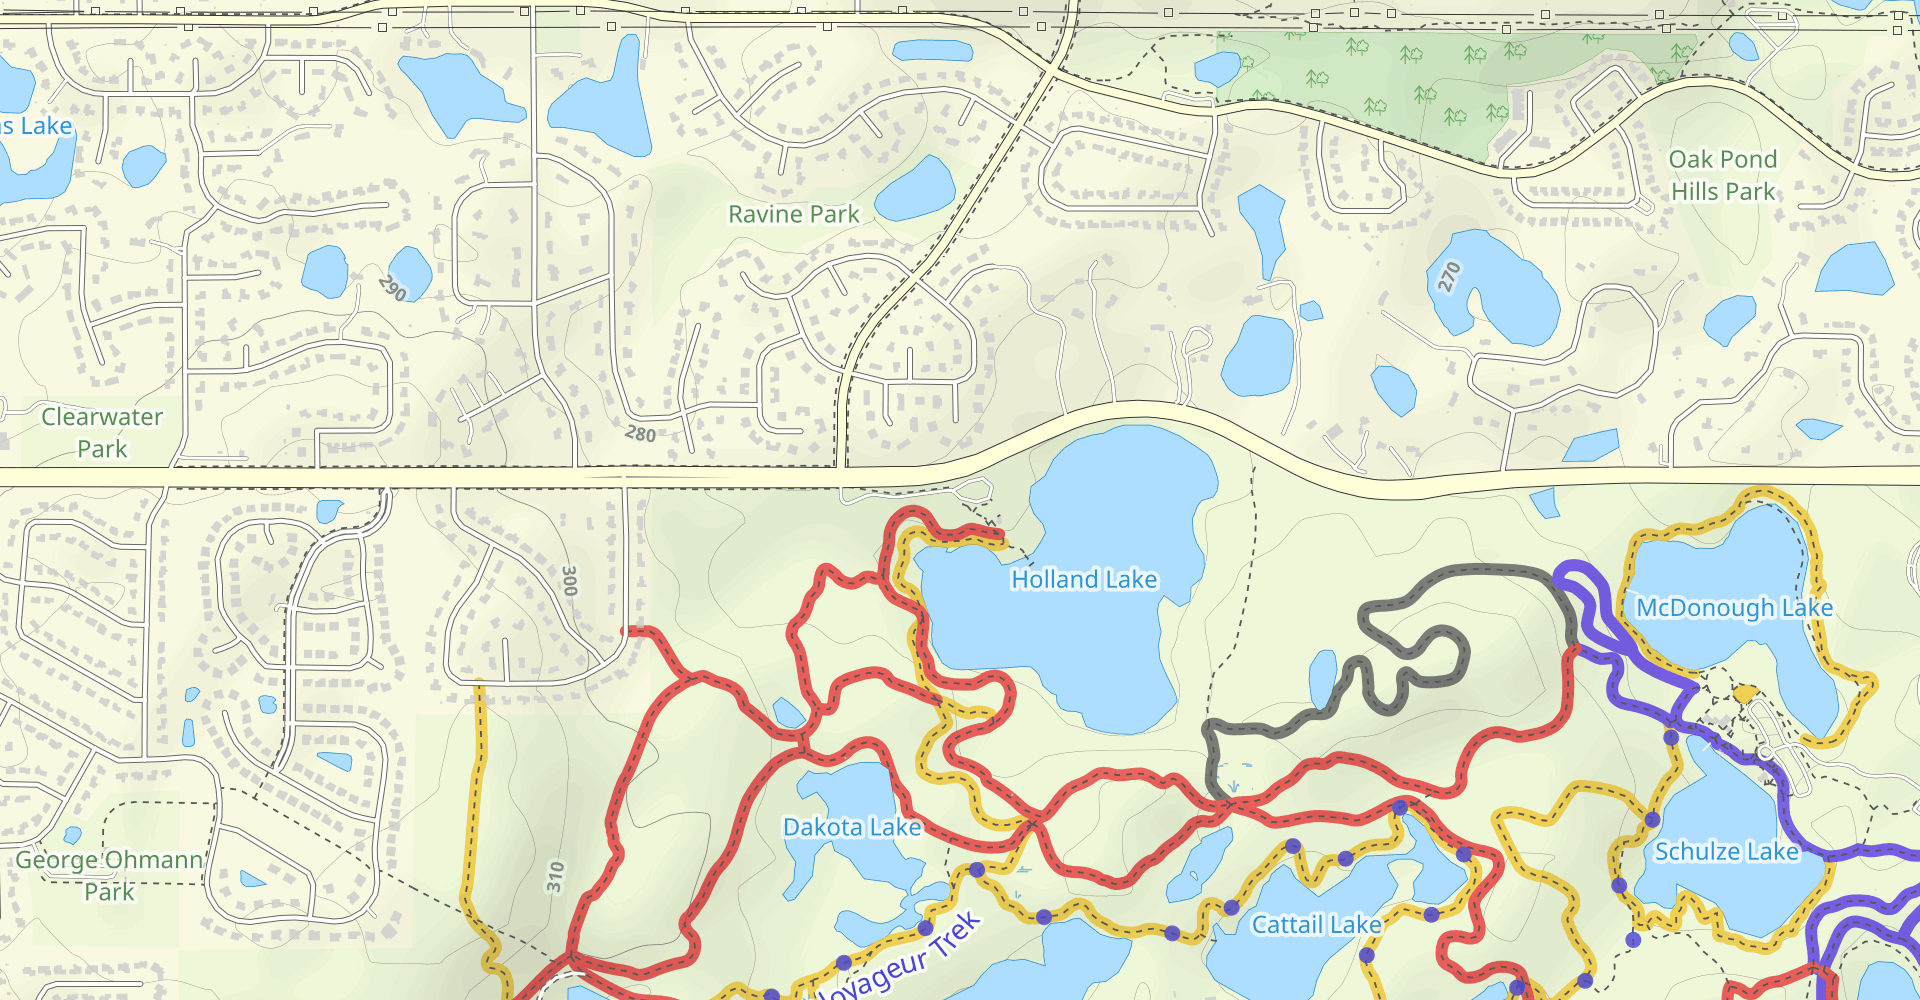 Jensen Lake, Bridge Pond, Portage Lake and Schulze Lake